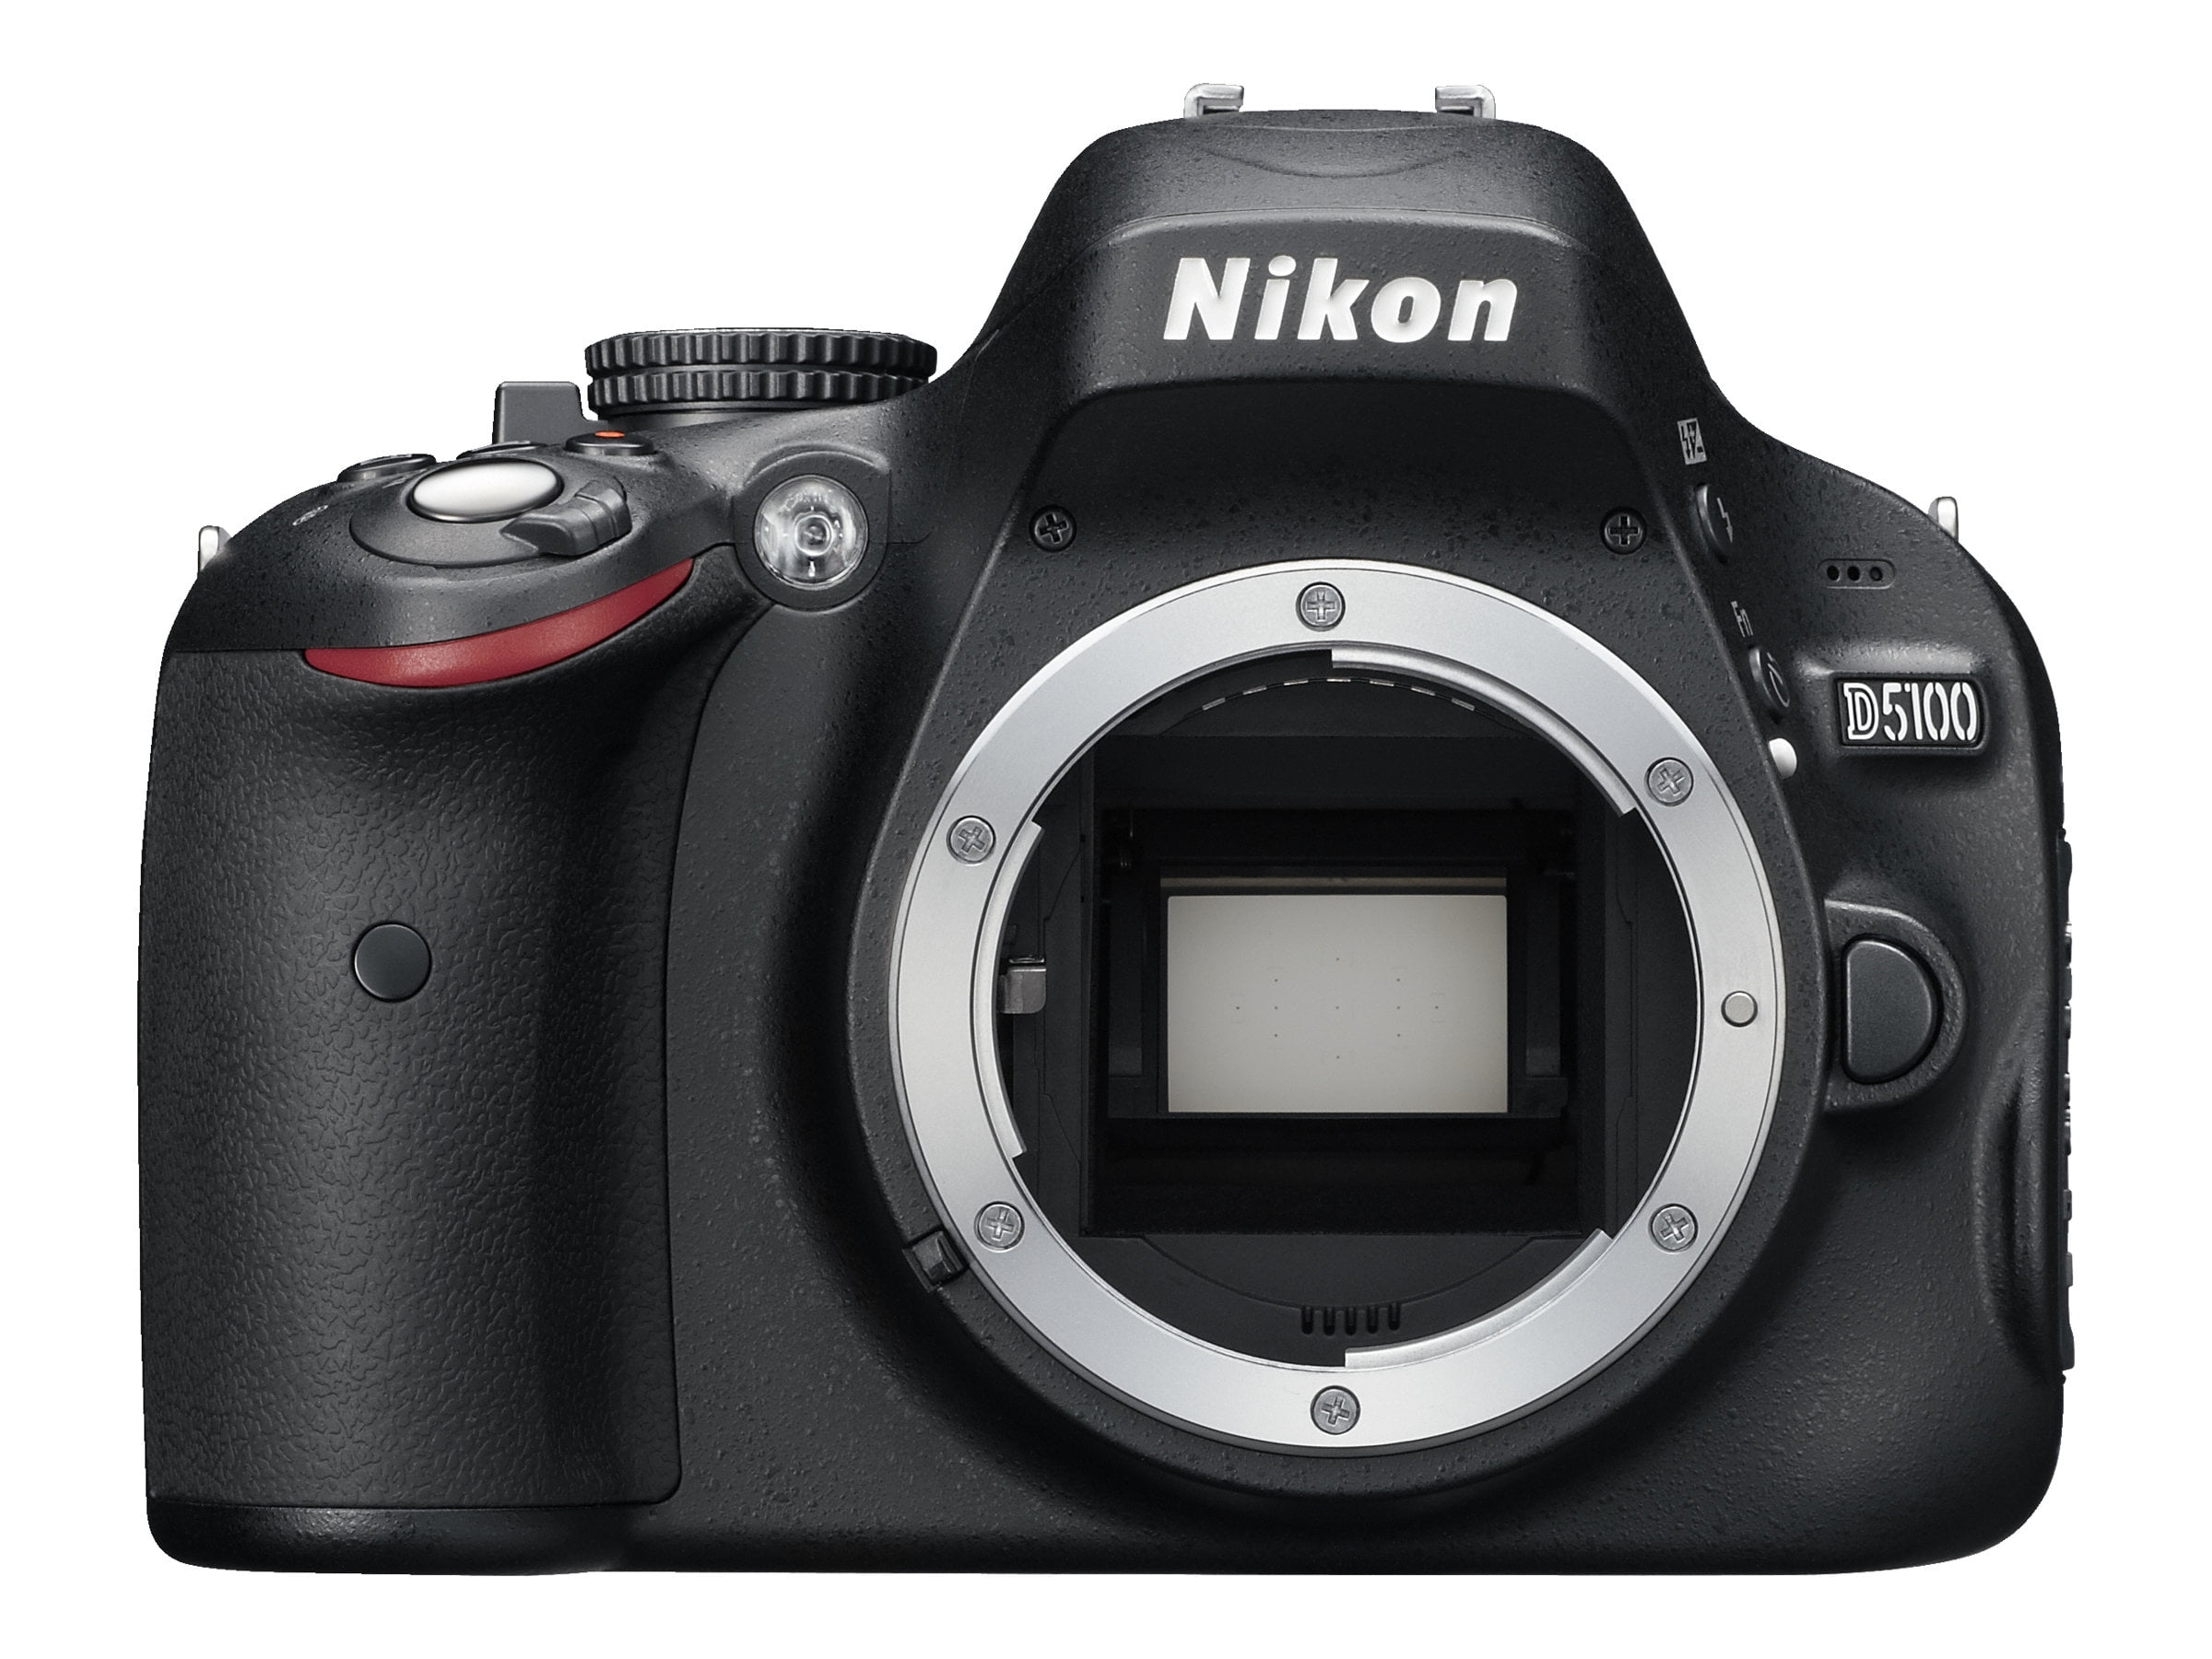 Nikon D5100 - Digital camera - SLR - 16.2 MP - APS-C - 1080p - 3x optical  zoom AF-S DX 18-55mm and 55-200mm VR lenses